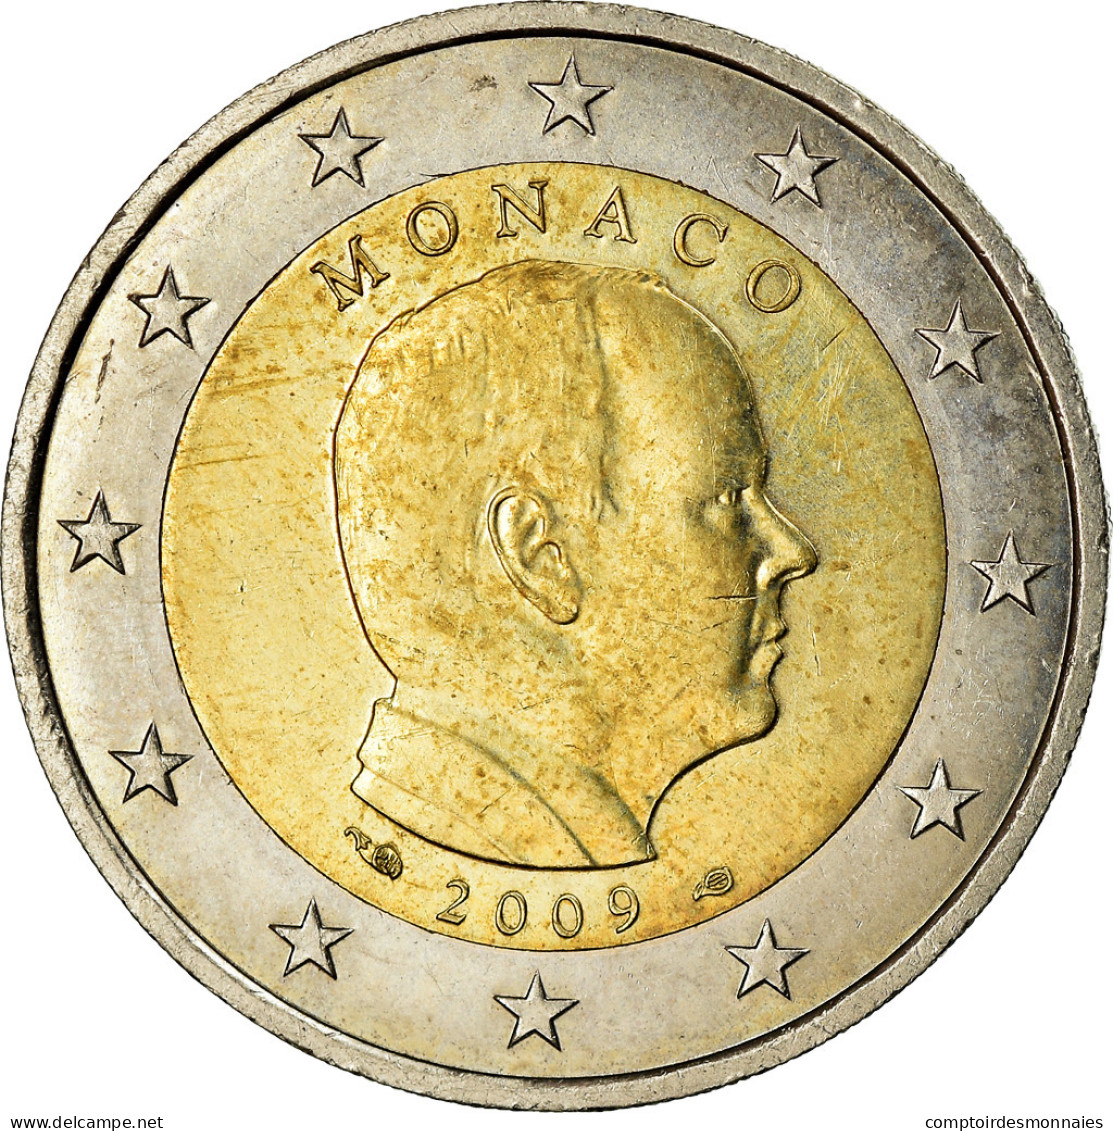 Monaco, 2 Euro, Prince Albert II, 2009, SPL, Bi-Metallic, KM:195 - Monaco